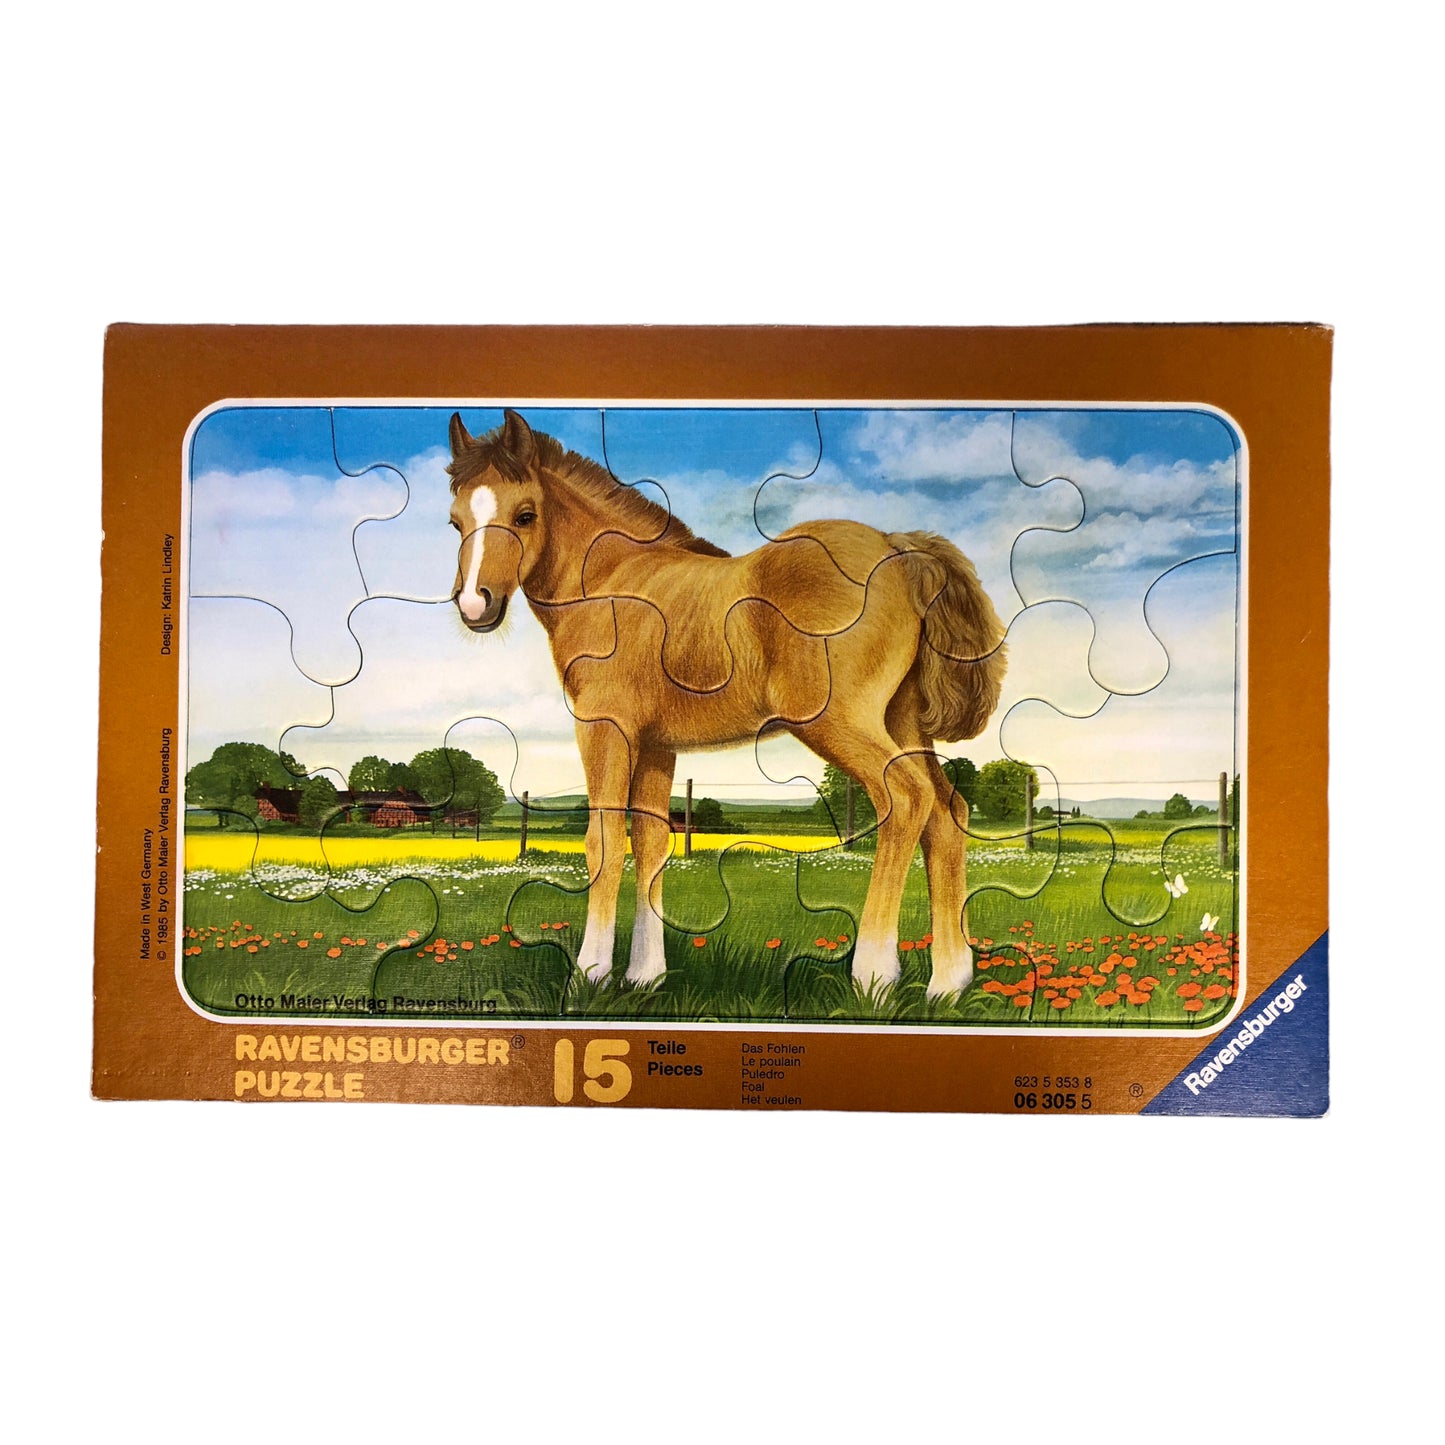 Ravensburger - Foal Puzzle, 15 pieces